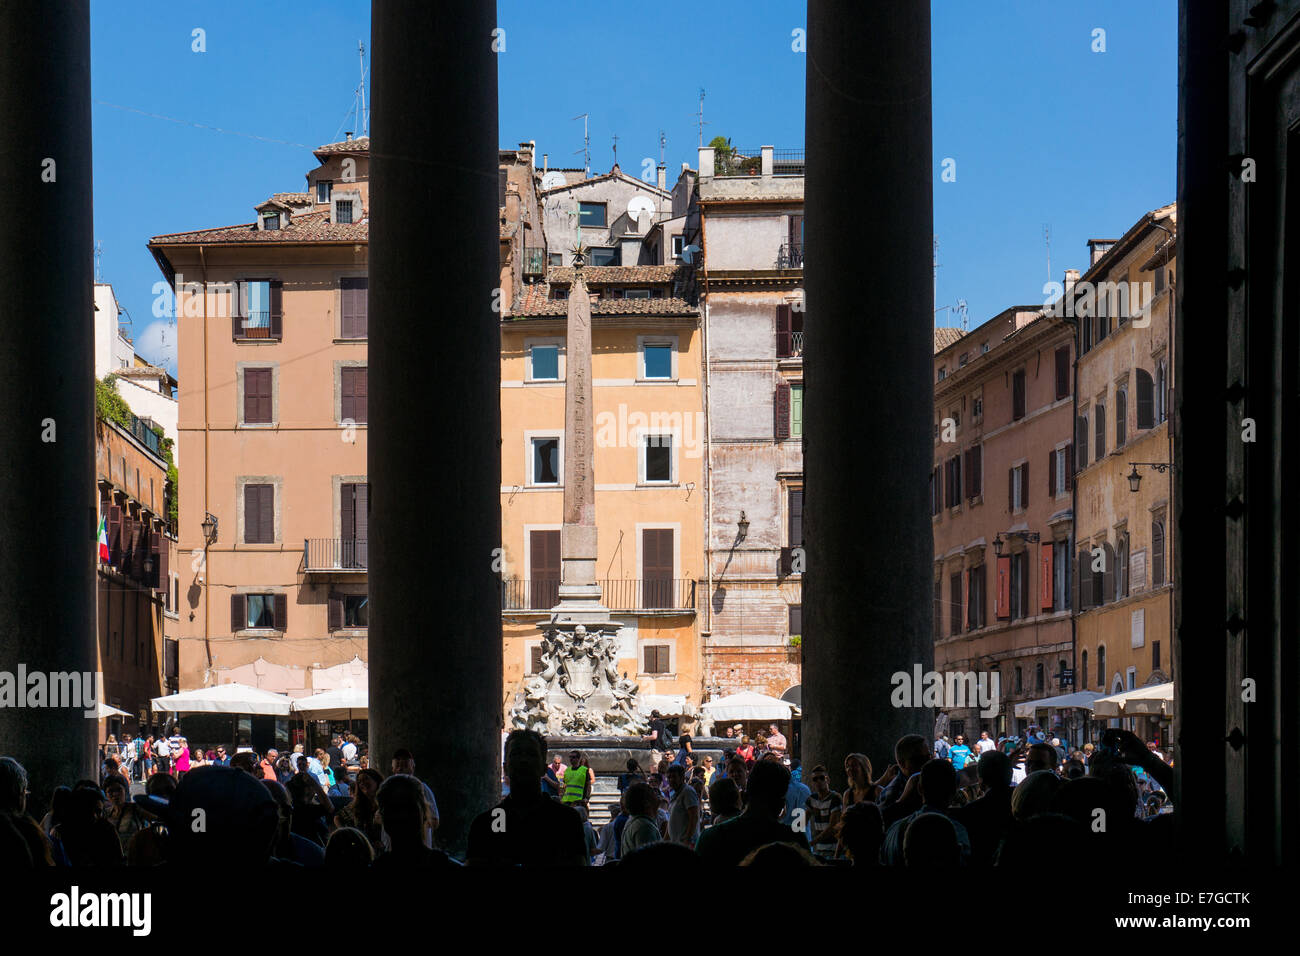 Italia: Piazza della Rotonda de Roma, visto desde entonces la entrada del Panteón. Foto desde el 5 de septiembre de 2014. Foto de stock